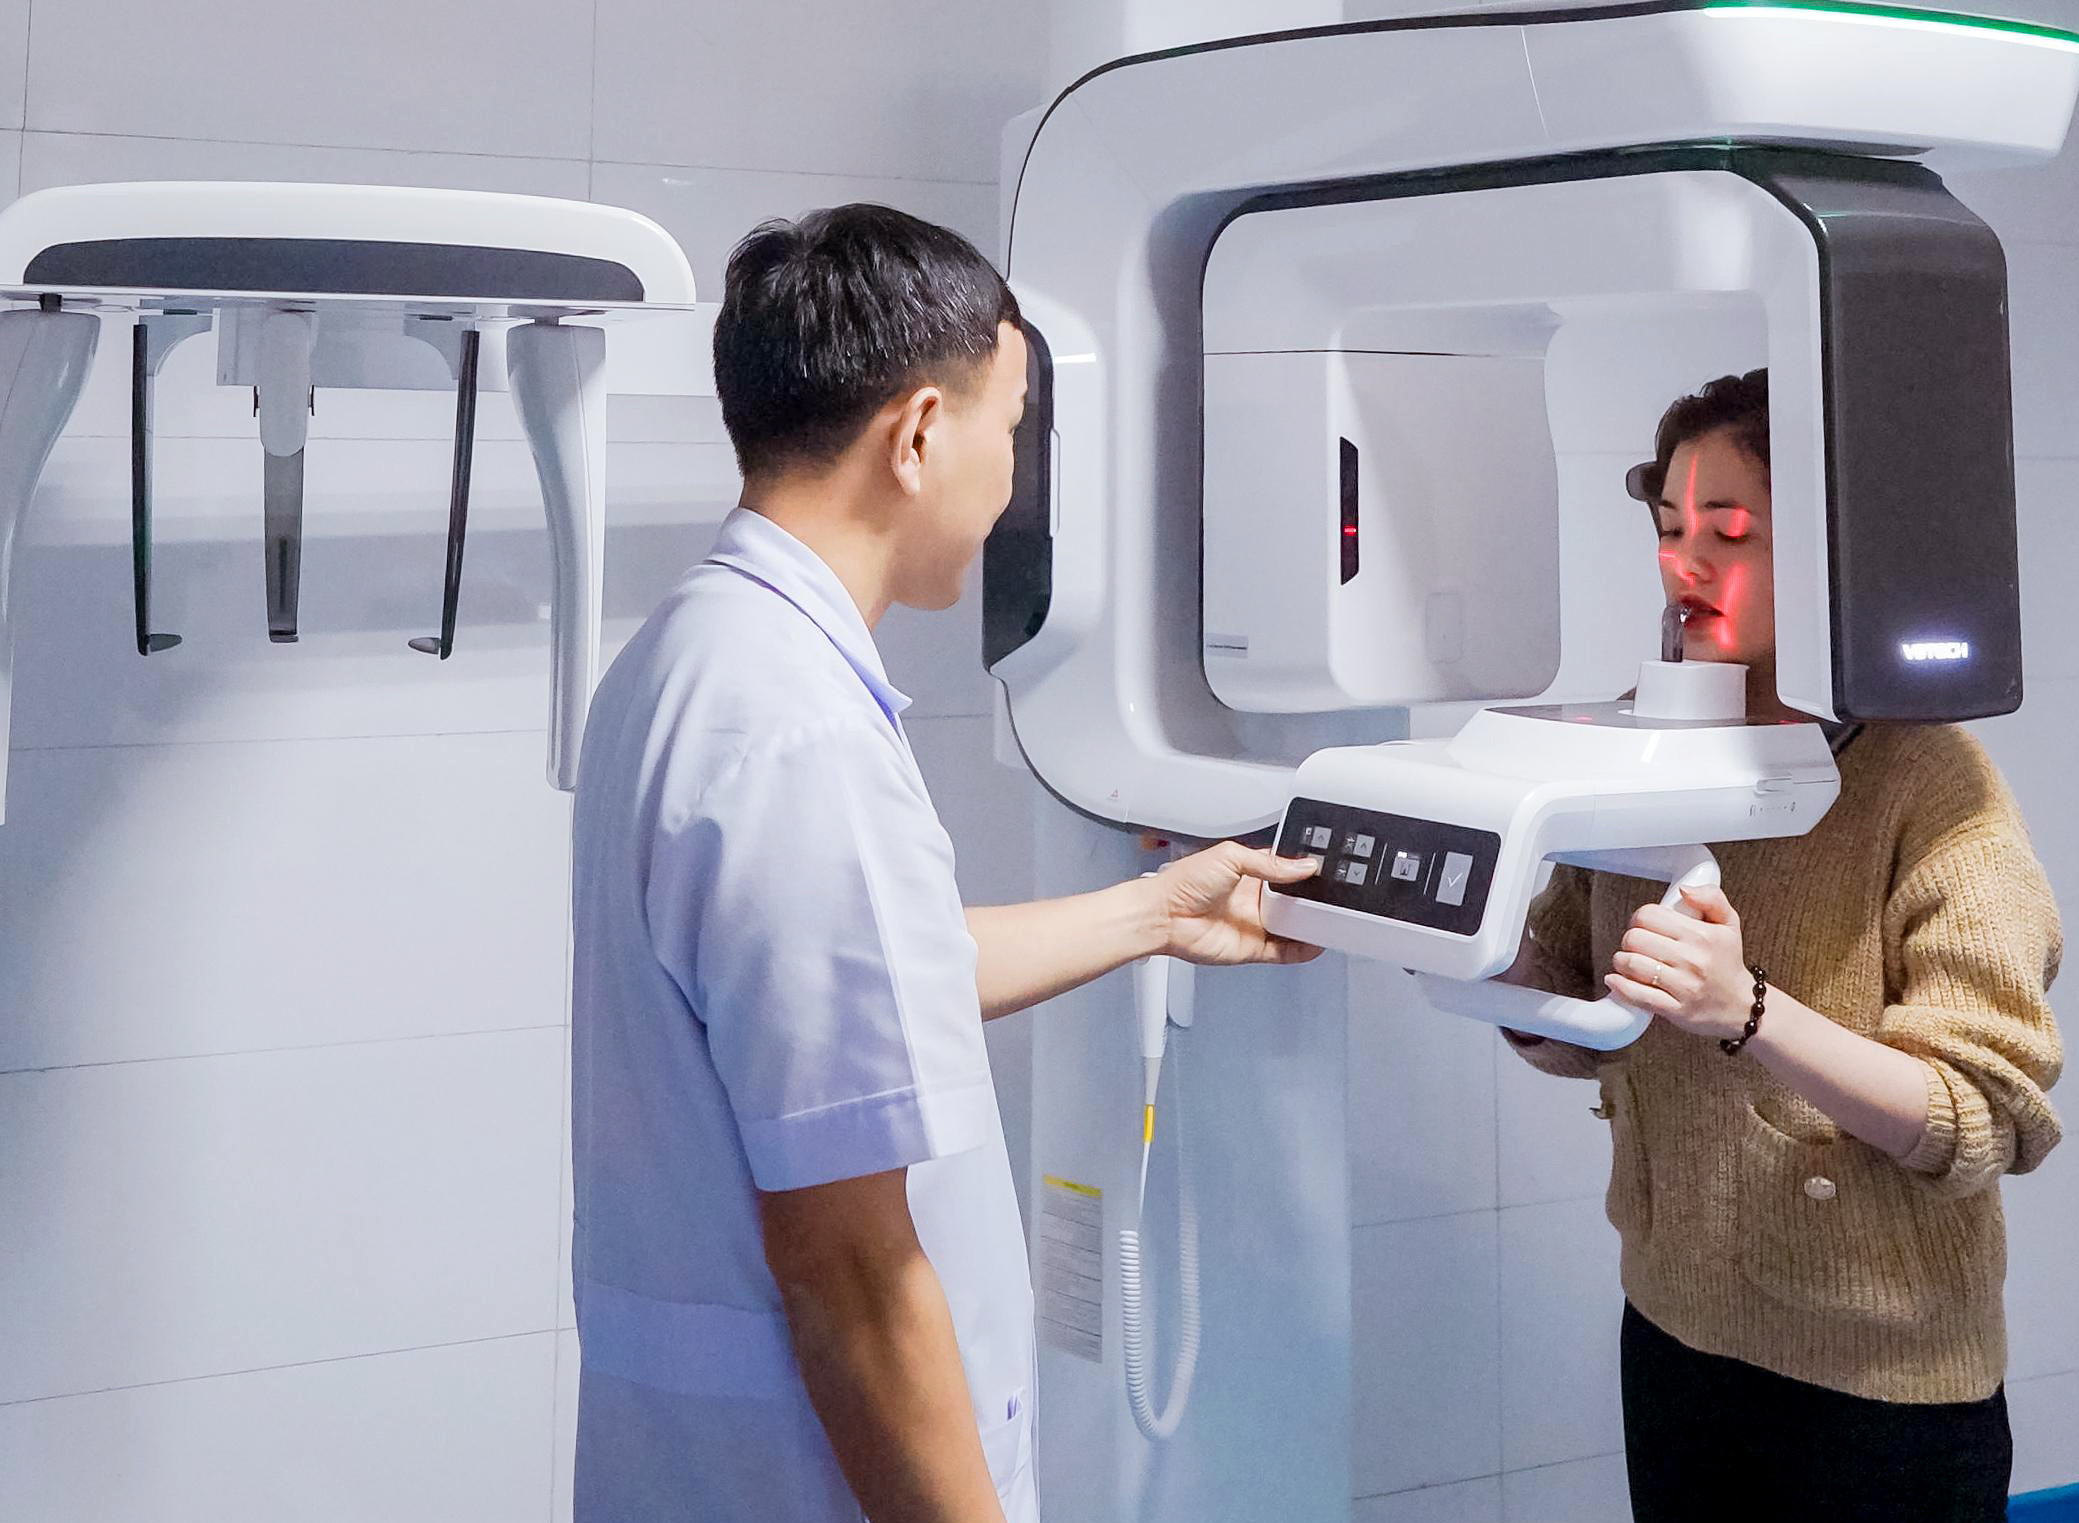 Bệnh viện Đa khoa Cửa Đông sử dụng máy CT-Scanner cone beam trong điều trị nha khoa.